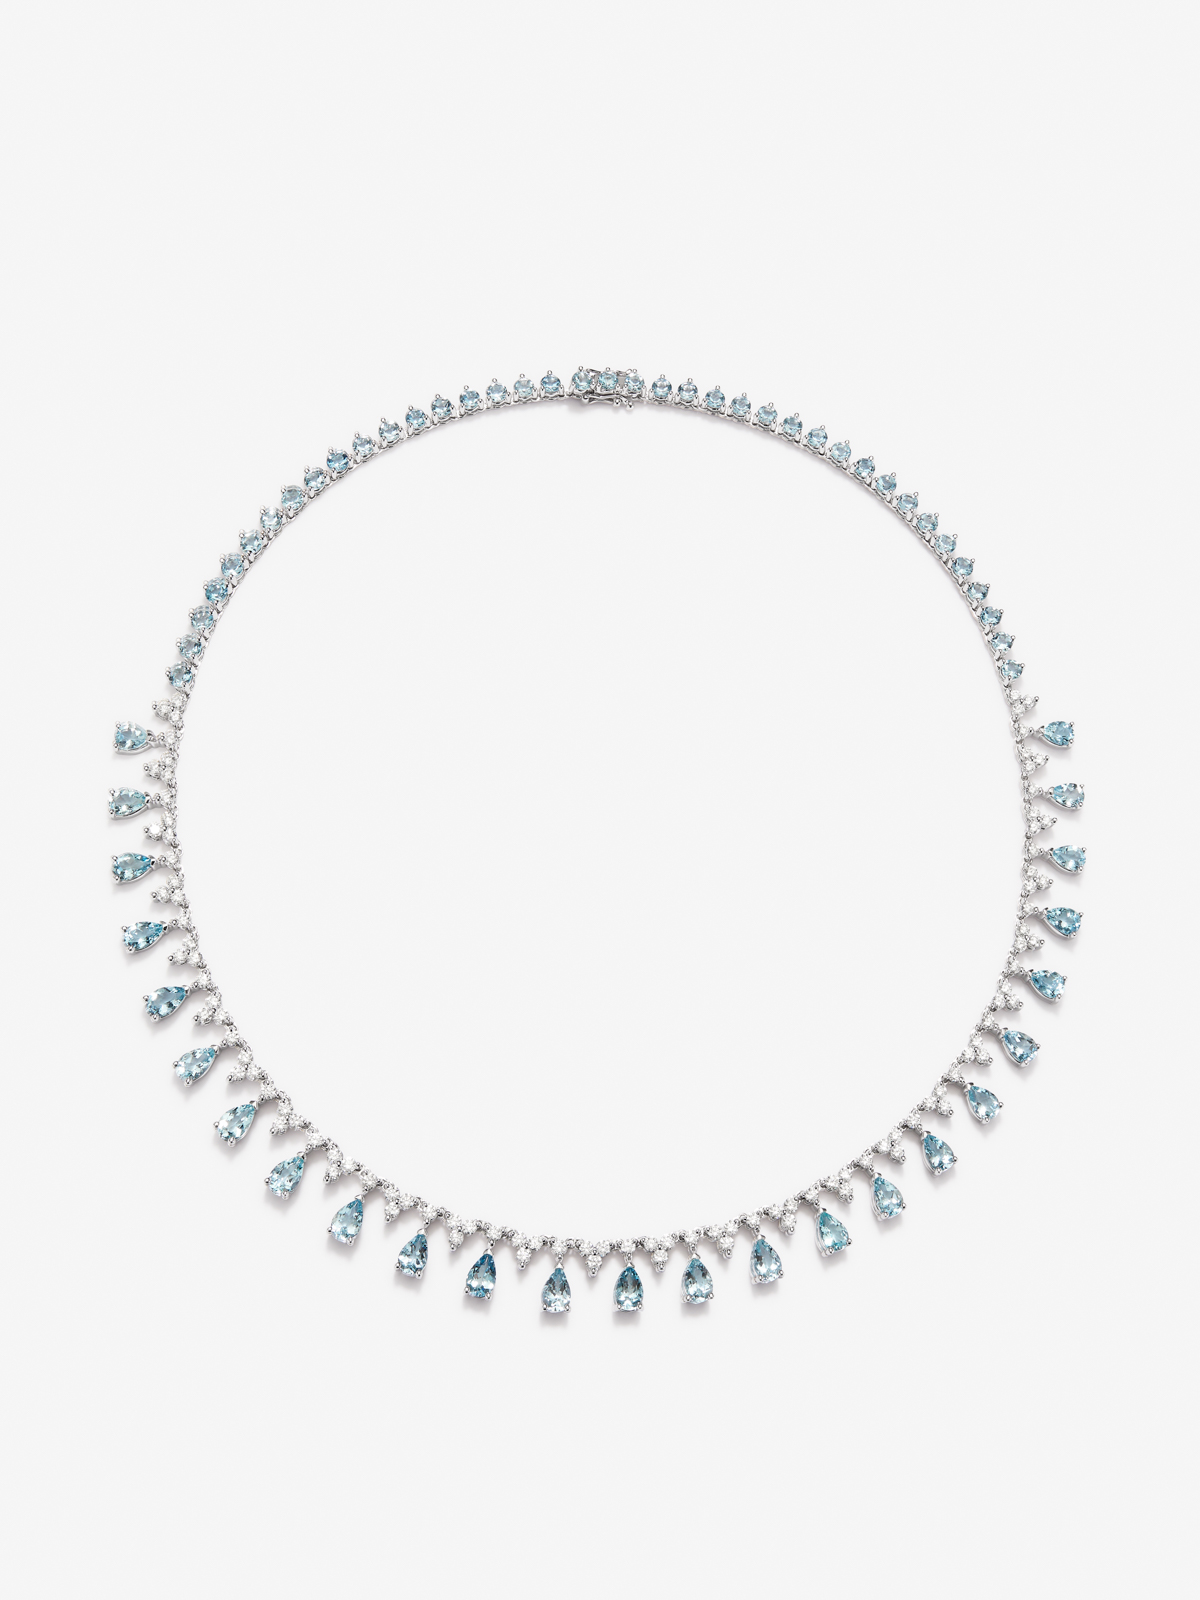 Collar rivière de oro blanco de 18K con aguamarinas azules en talla pera y brillante de 14,19 cts y diamantes blancos en talla brillante de 3,82 cts